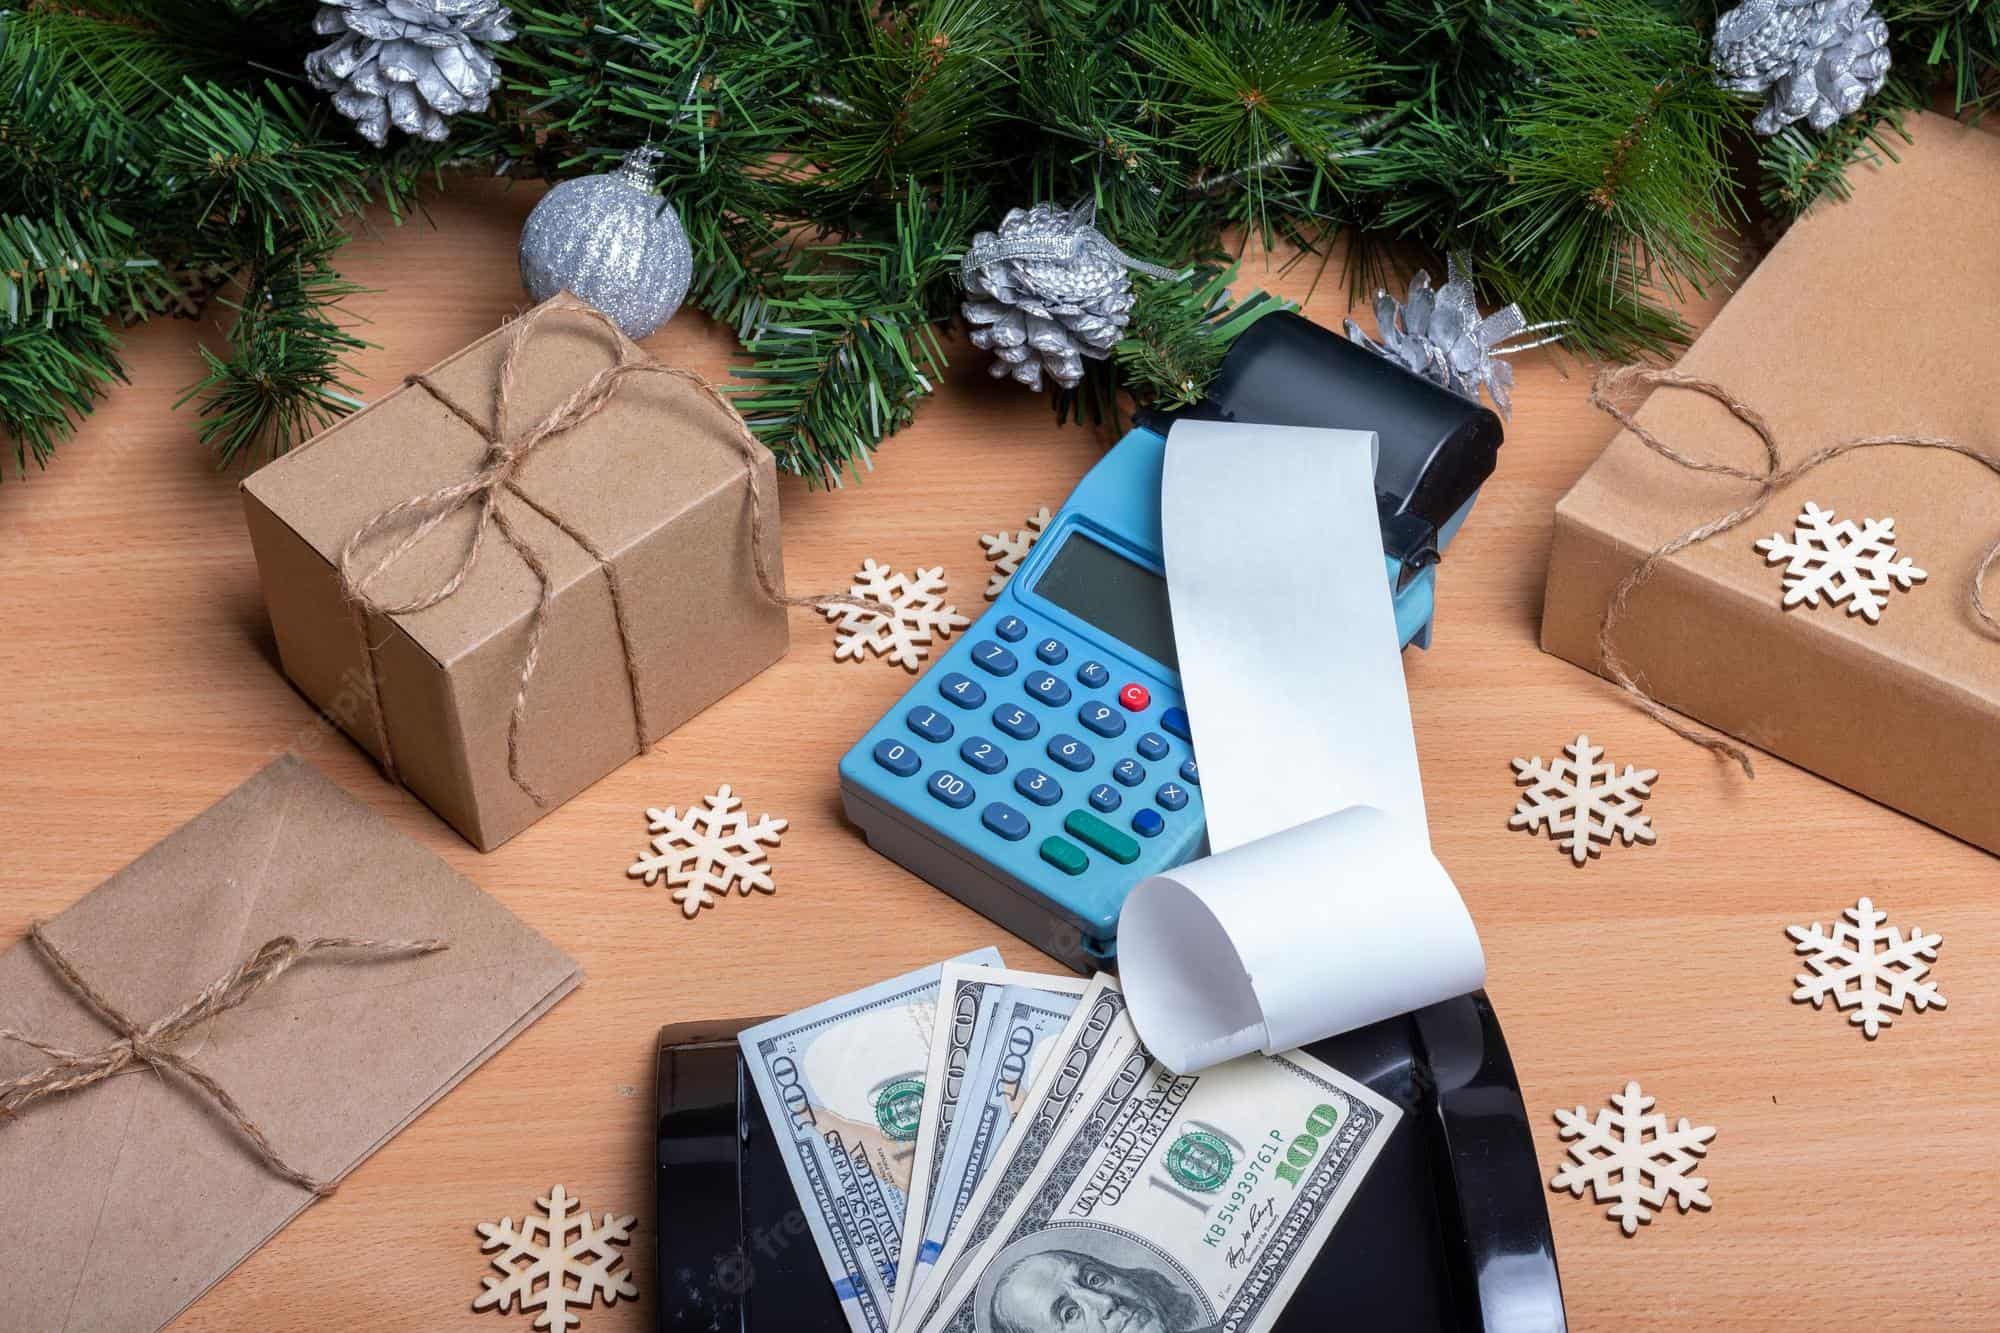 Que Puedes Regalar En Navidad Nos Ajustamos a Cualquier Presupuesto